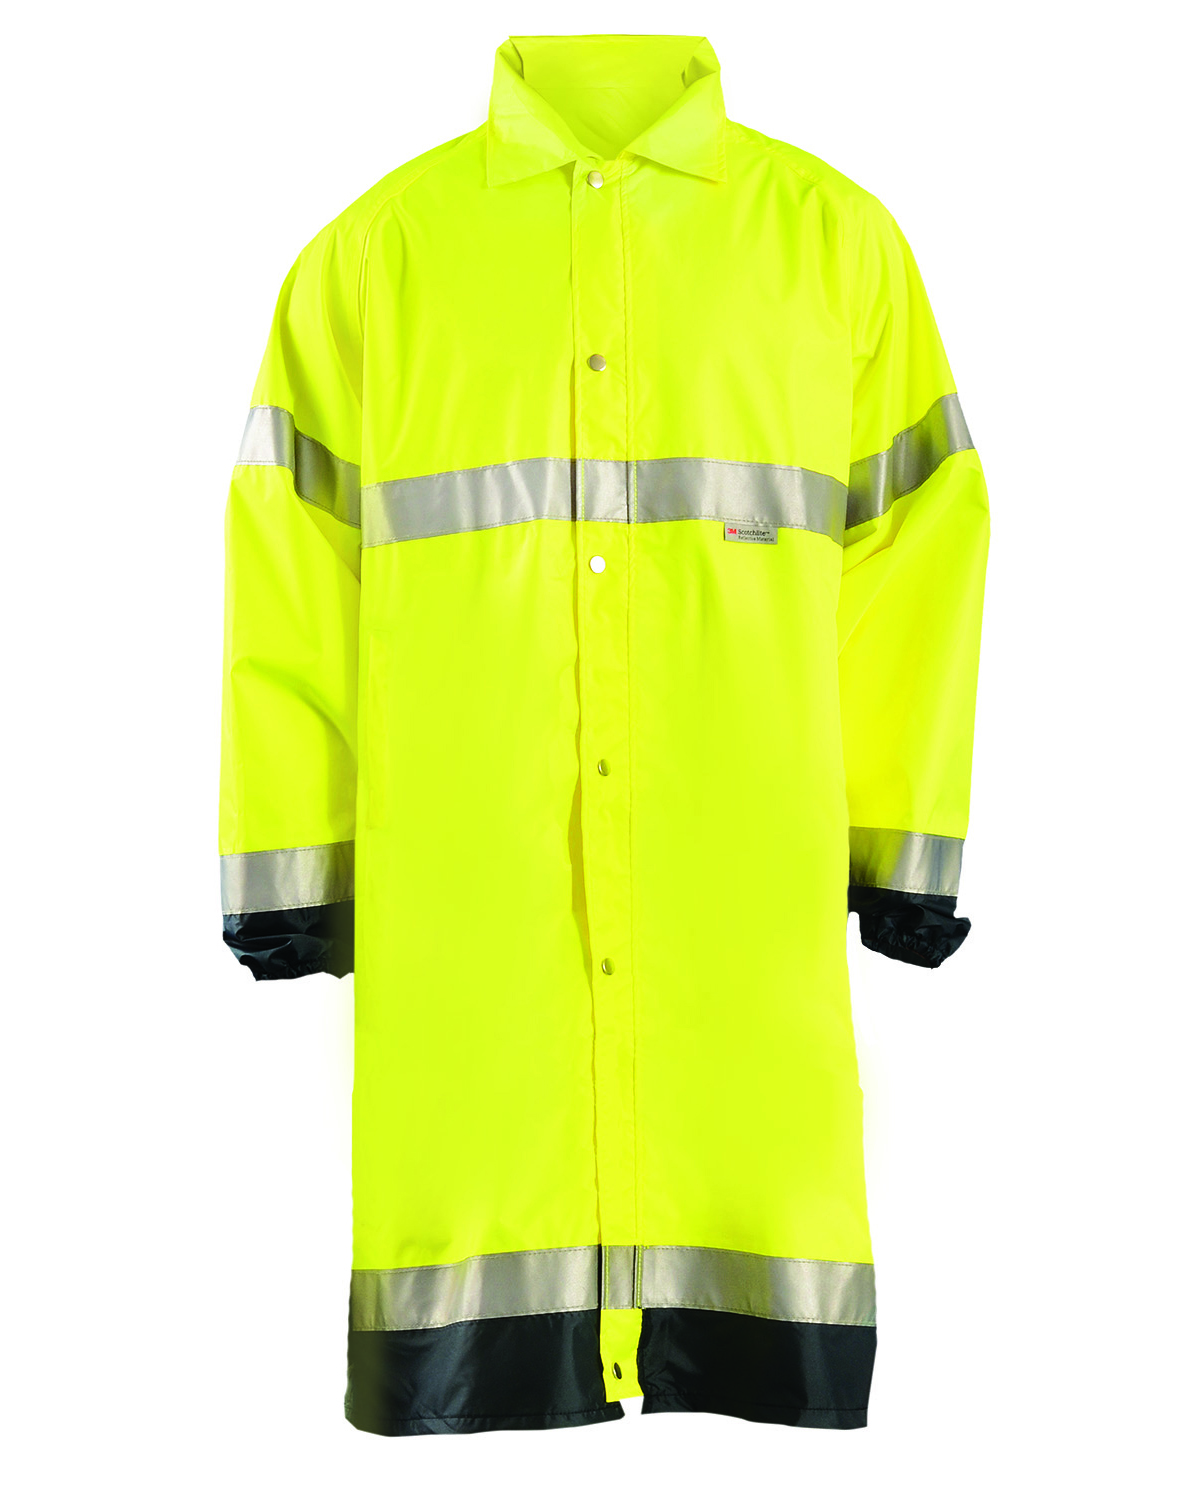 OccuNomix LUXTJRE - Men's Premium Breathable Rain Jacket